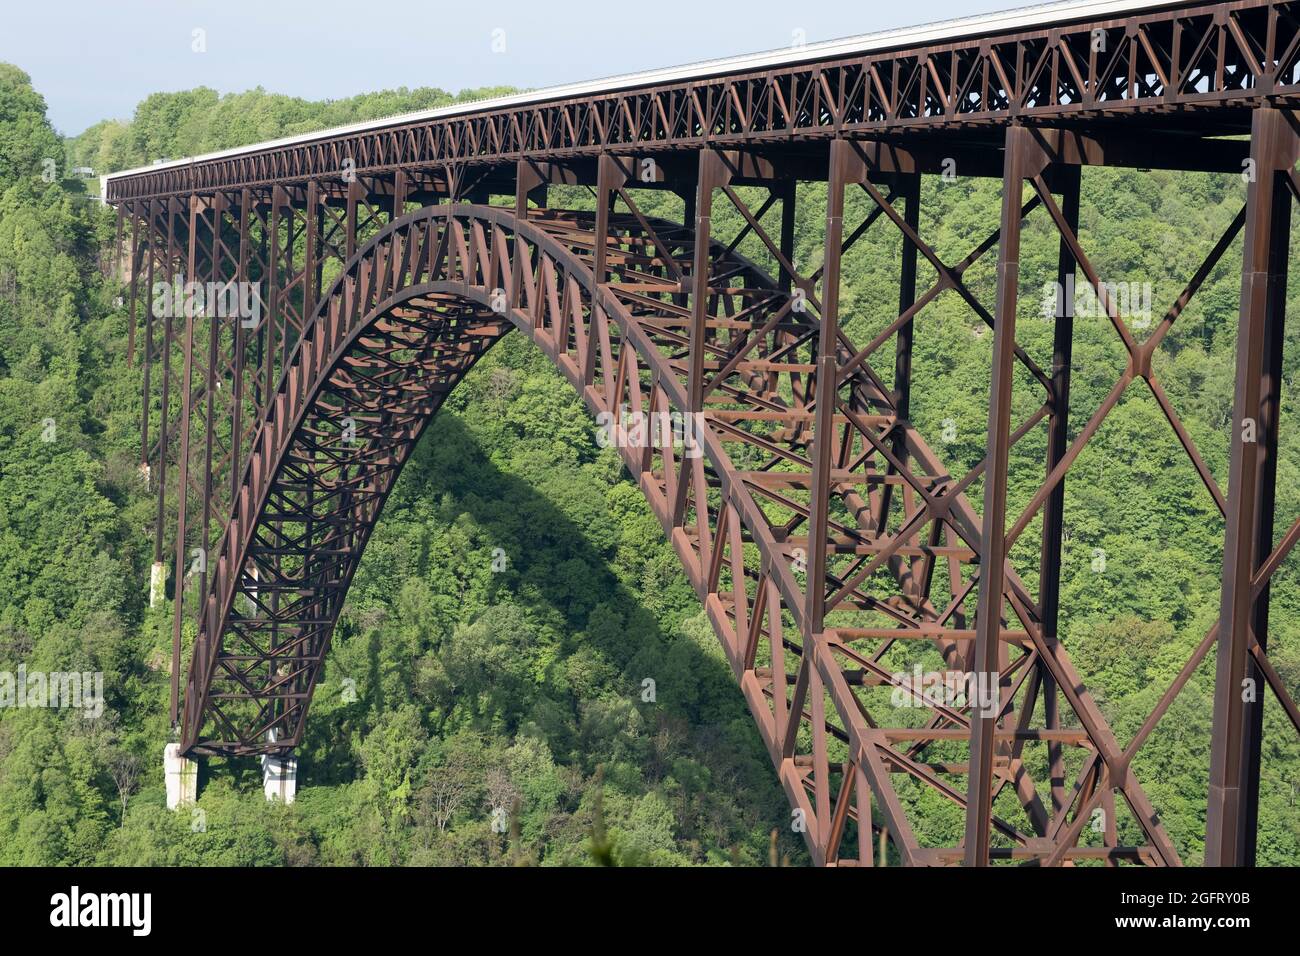 New River Gorge Bridge, West Virginia, autostrada US 19. La più lunga estensione in acciaio nell'emisfero occidentale. Foto Stock